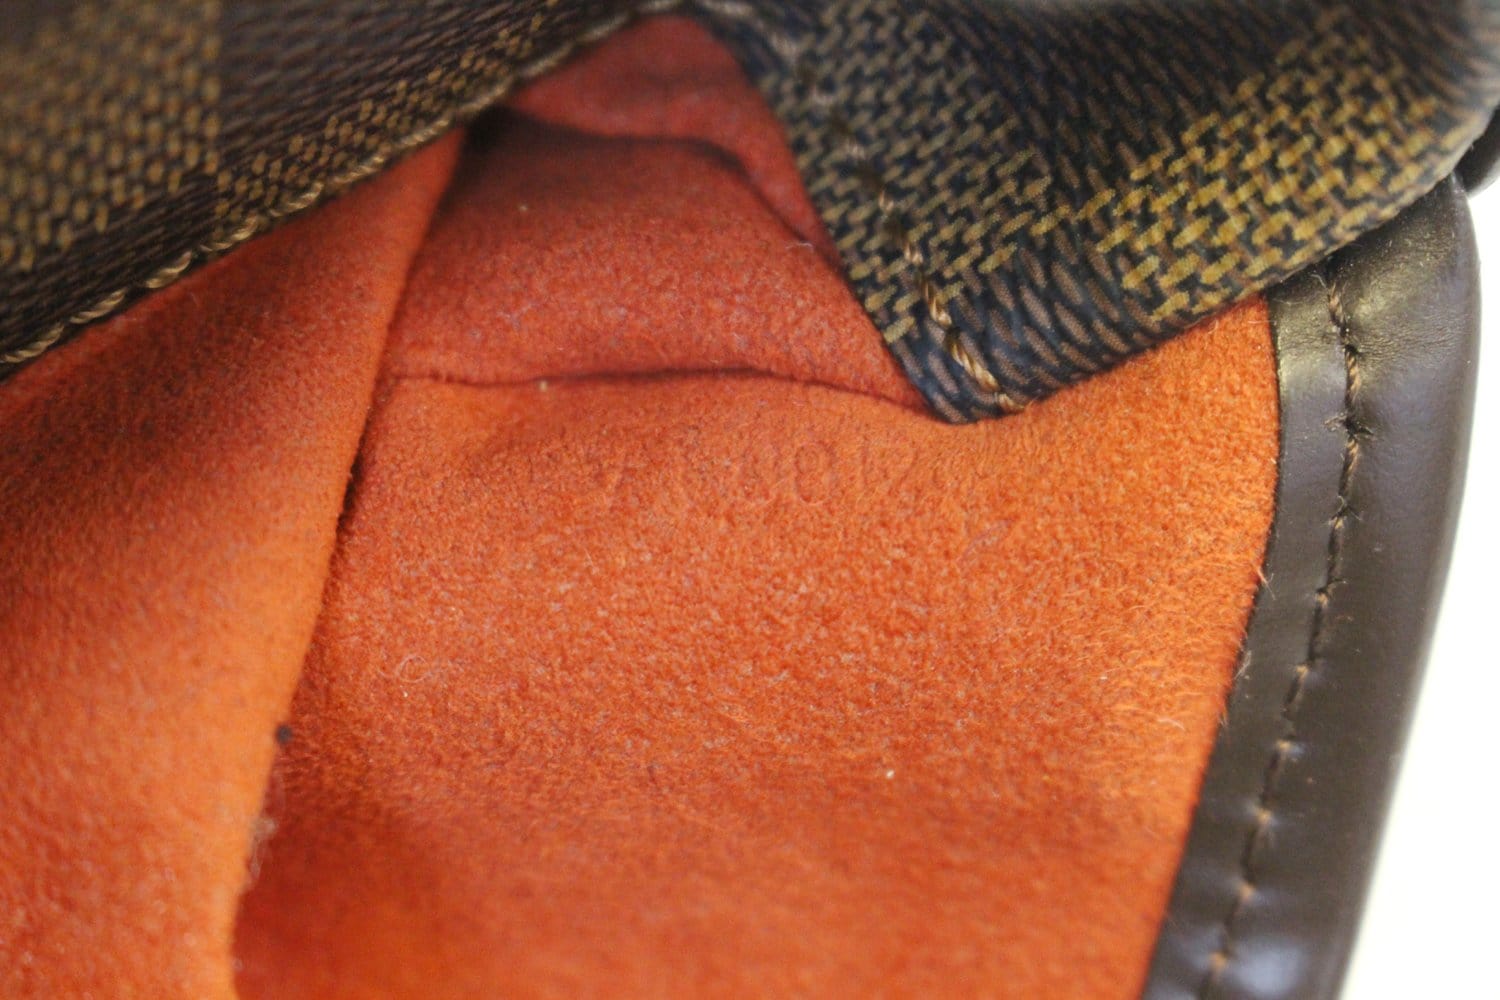 Louis Vuitton Pochette Shoulder bag 401179, pocket-detail messenger bag